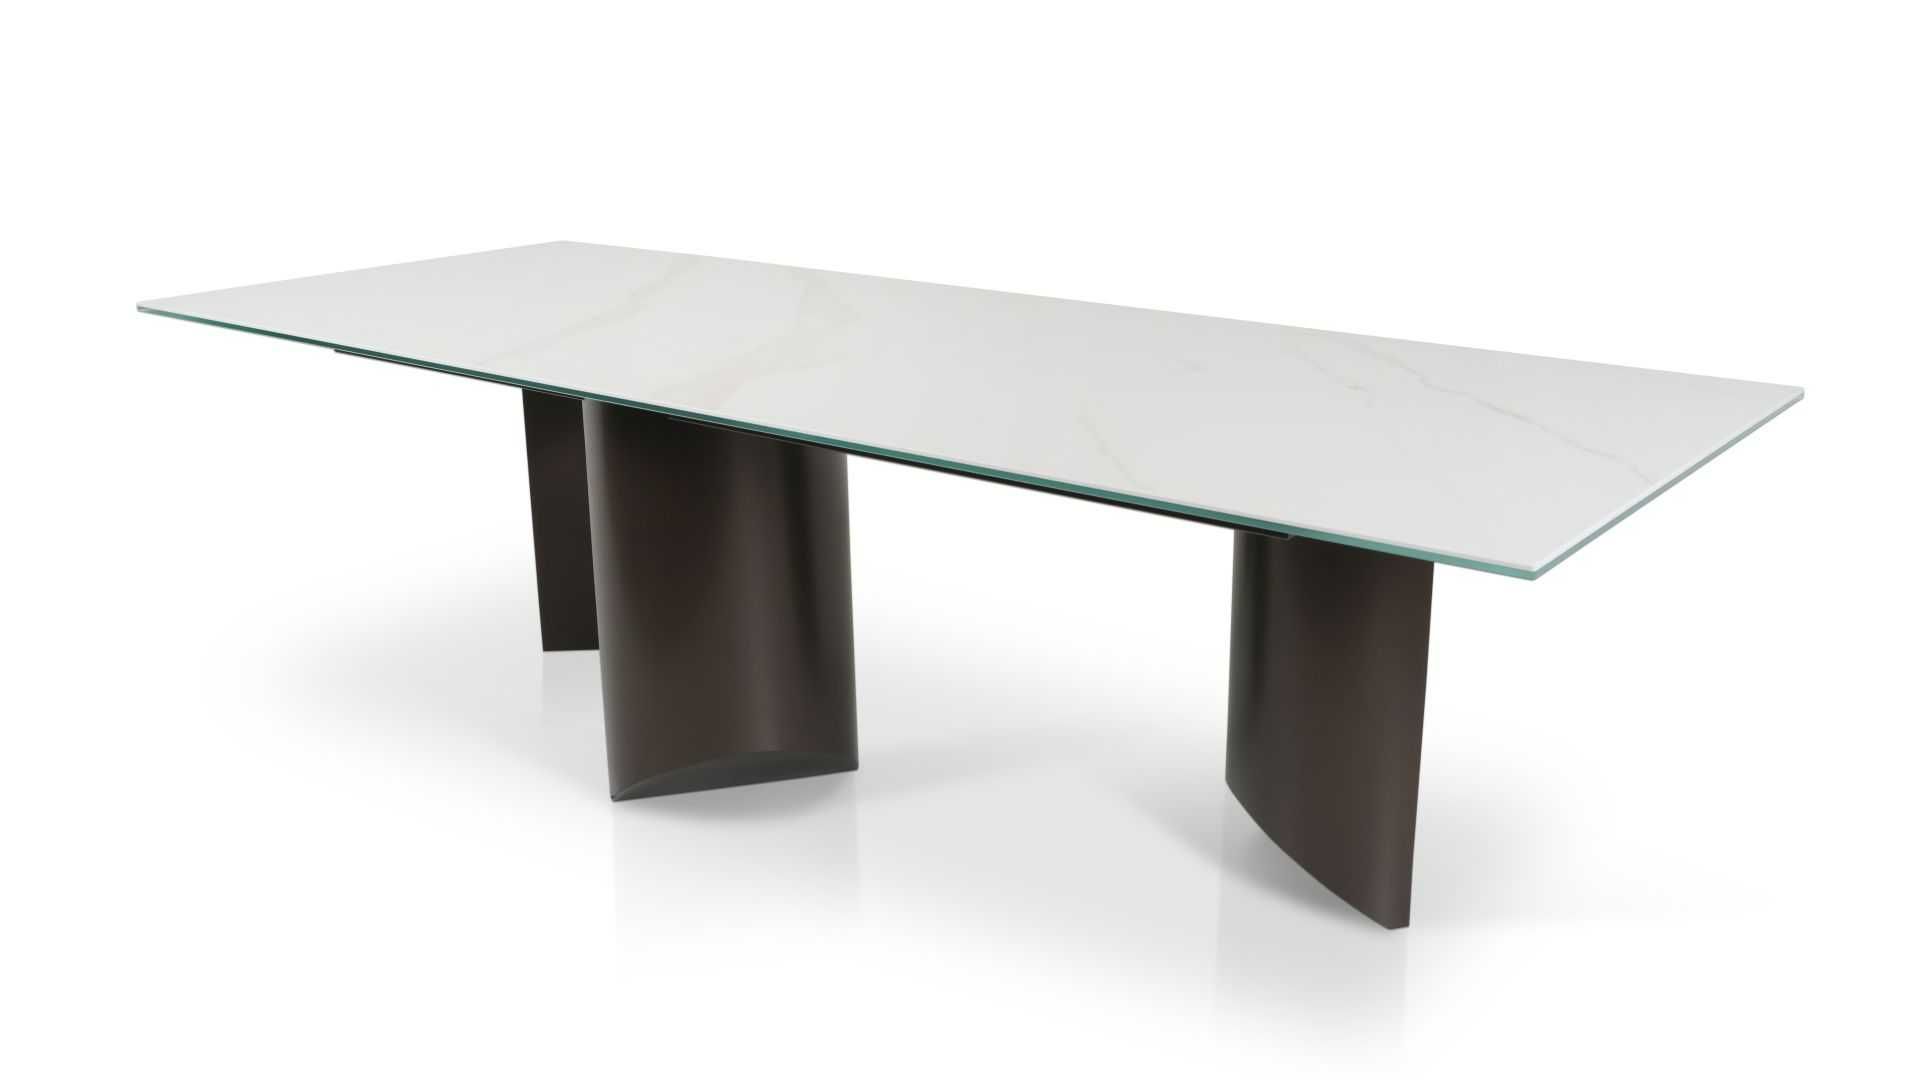 Stół ARENA blat ze spieku kwarcowego, podstawa brąz 300 cm x 120 cm